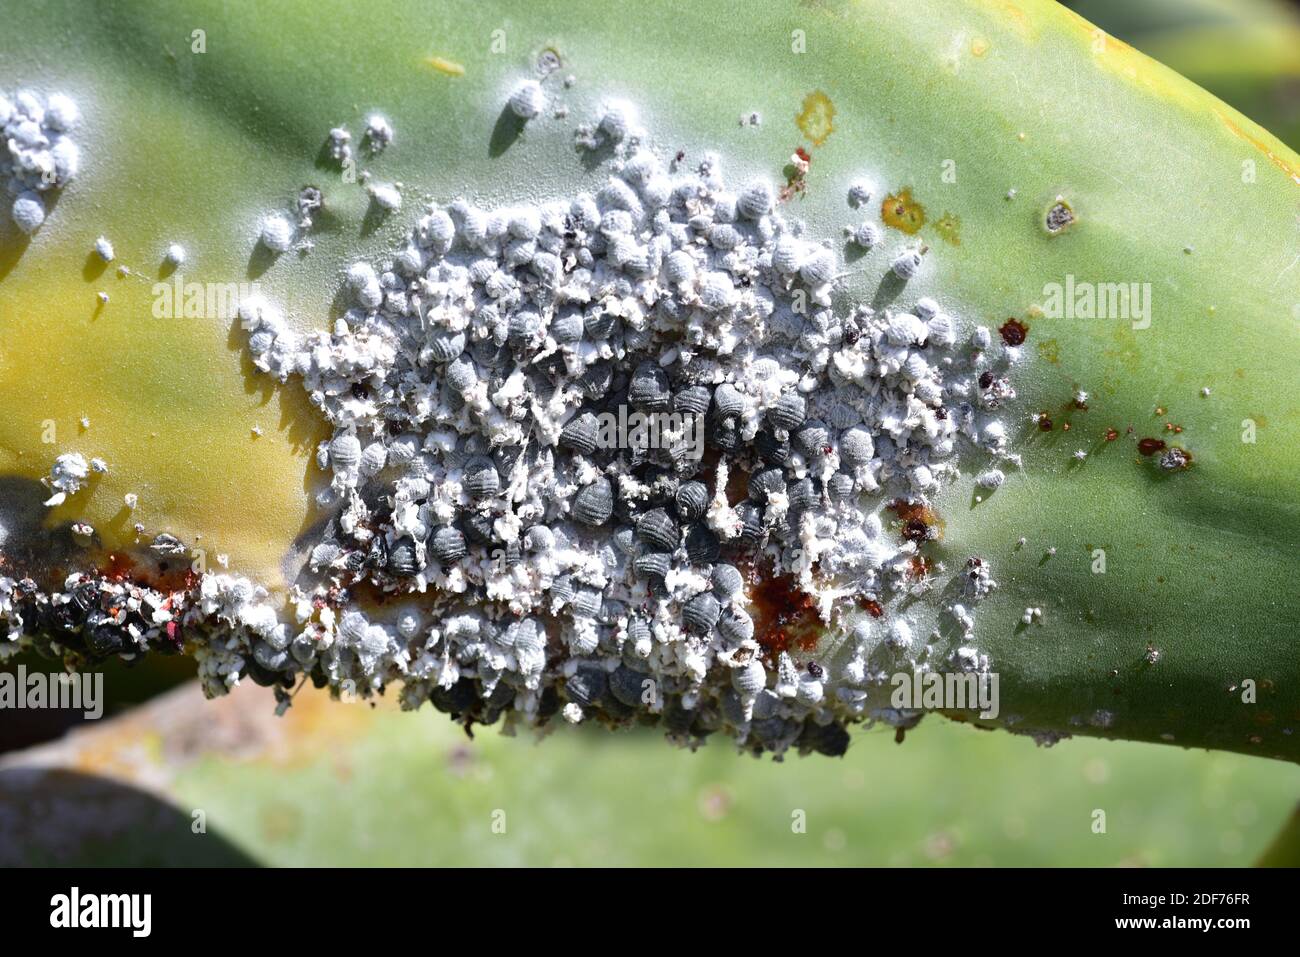 La cocciniglia (Dactylopius coccus) è un insetto di hemiptera che il colorante carminio è estratto. Questa foto è stata scattata a Guatiza, Isola di Lanzarote, Canarie Foto Stock